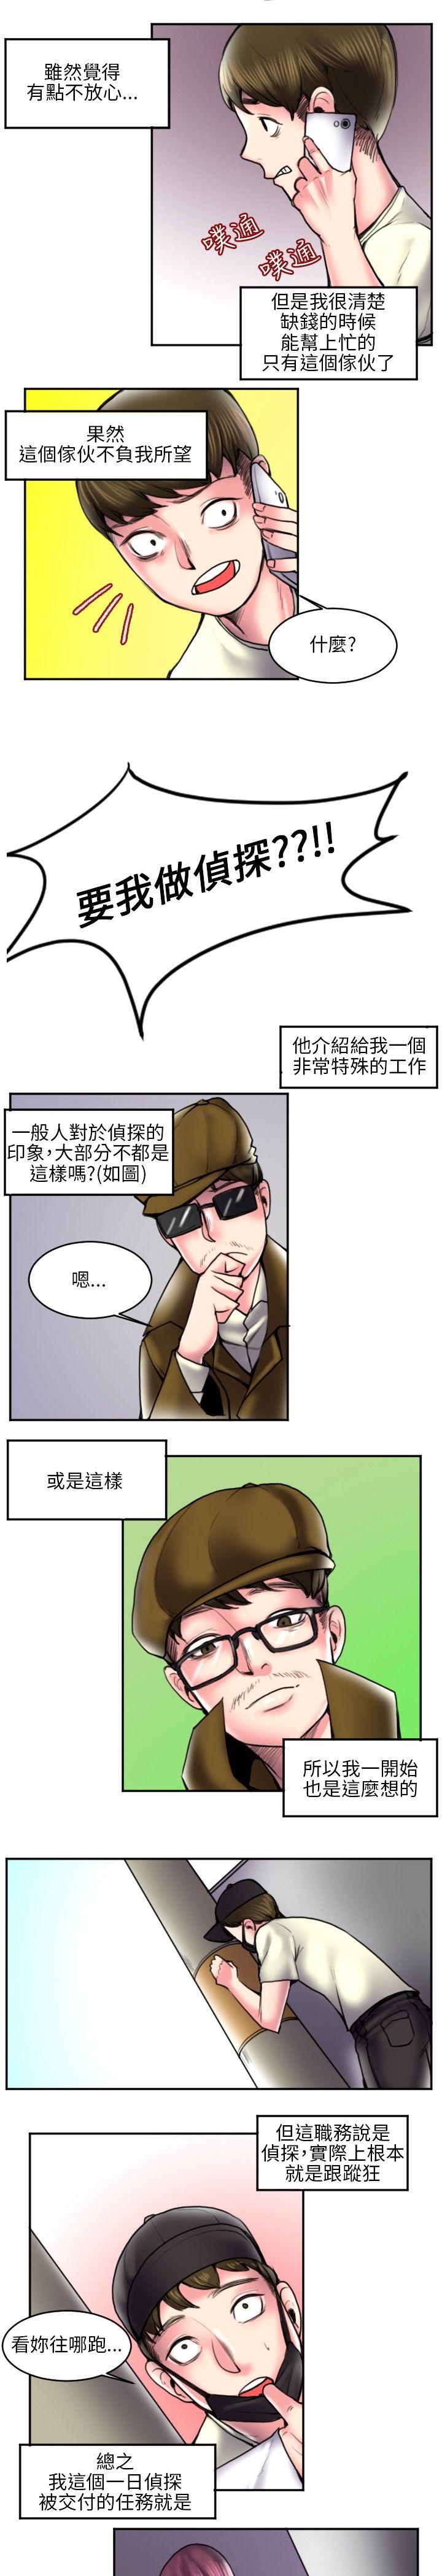 秘密Story  打工仔钓人妻(1) 漫画图片3.jpg